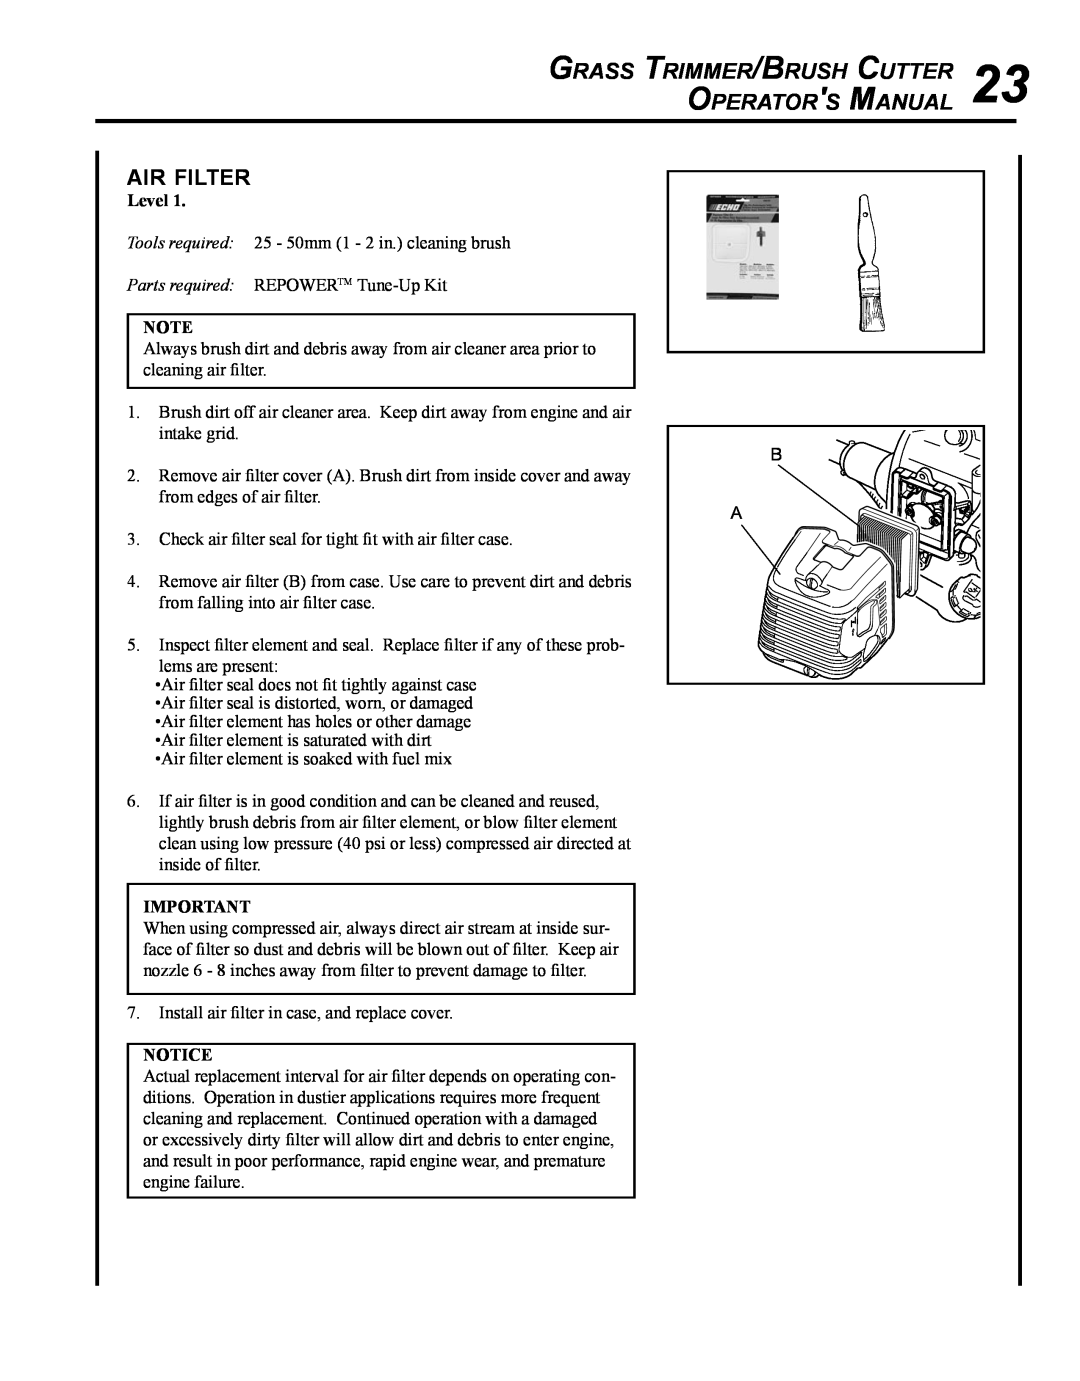 Echo SRM - 410U manual air filter, Grass Trimmer/Brush Cutter Operators Manual, Level 